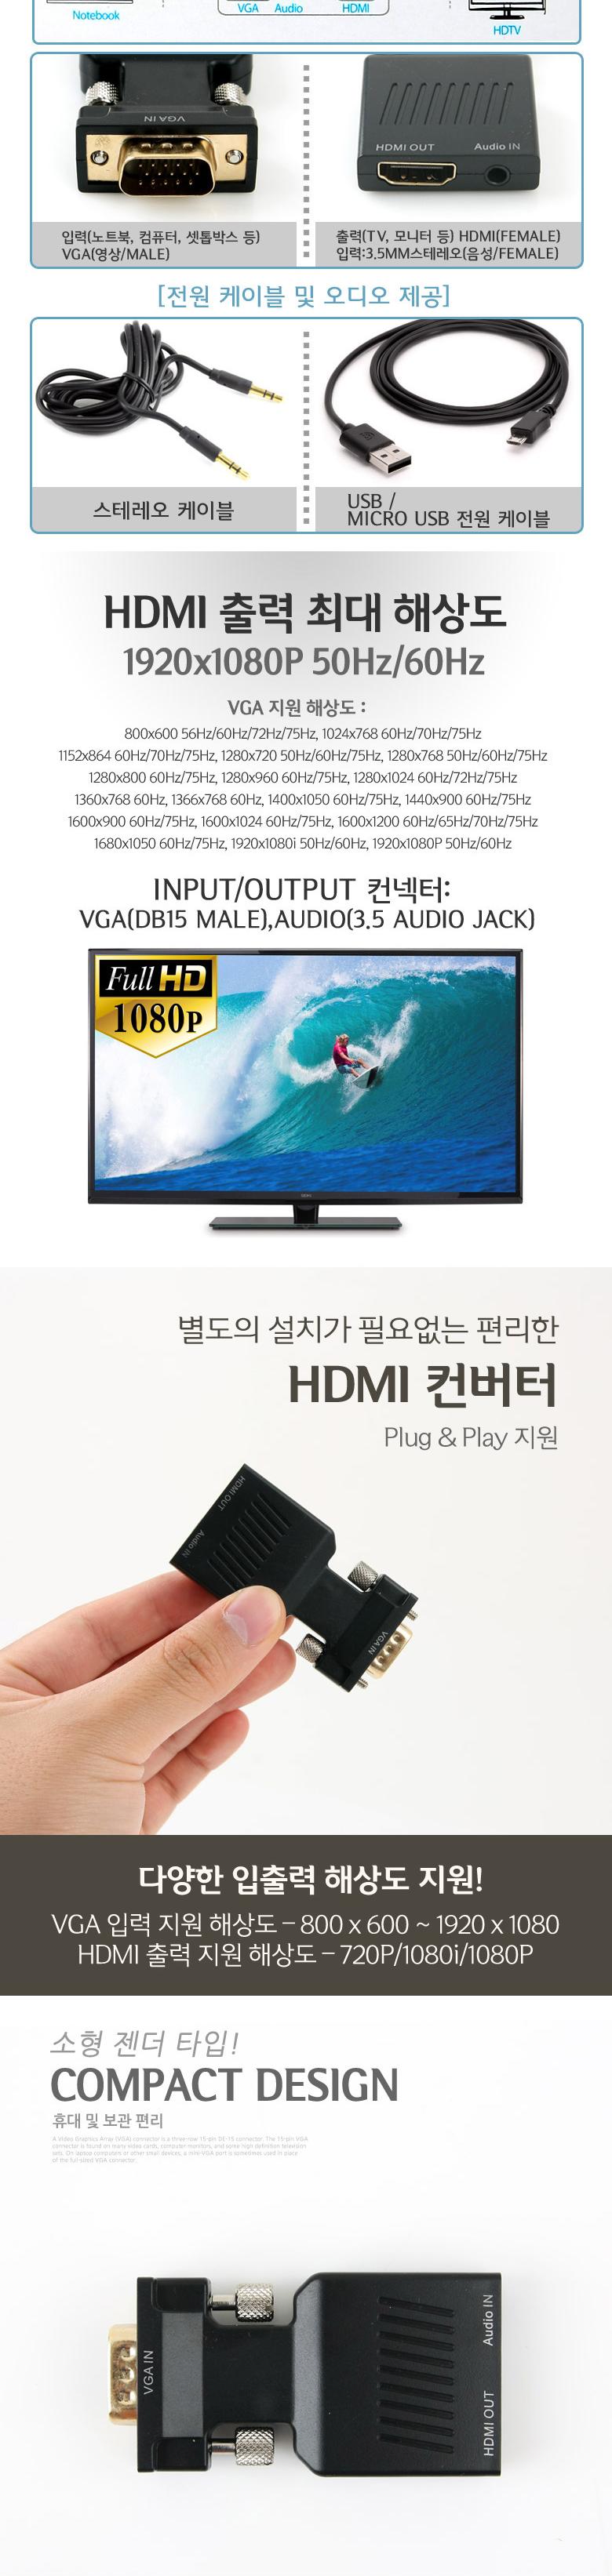 Coms HDMI (VGA to HDMI) +   HDMI HDMIȯ Ʈũ ǻֺ  ȯ ȯġ ġ